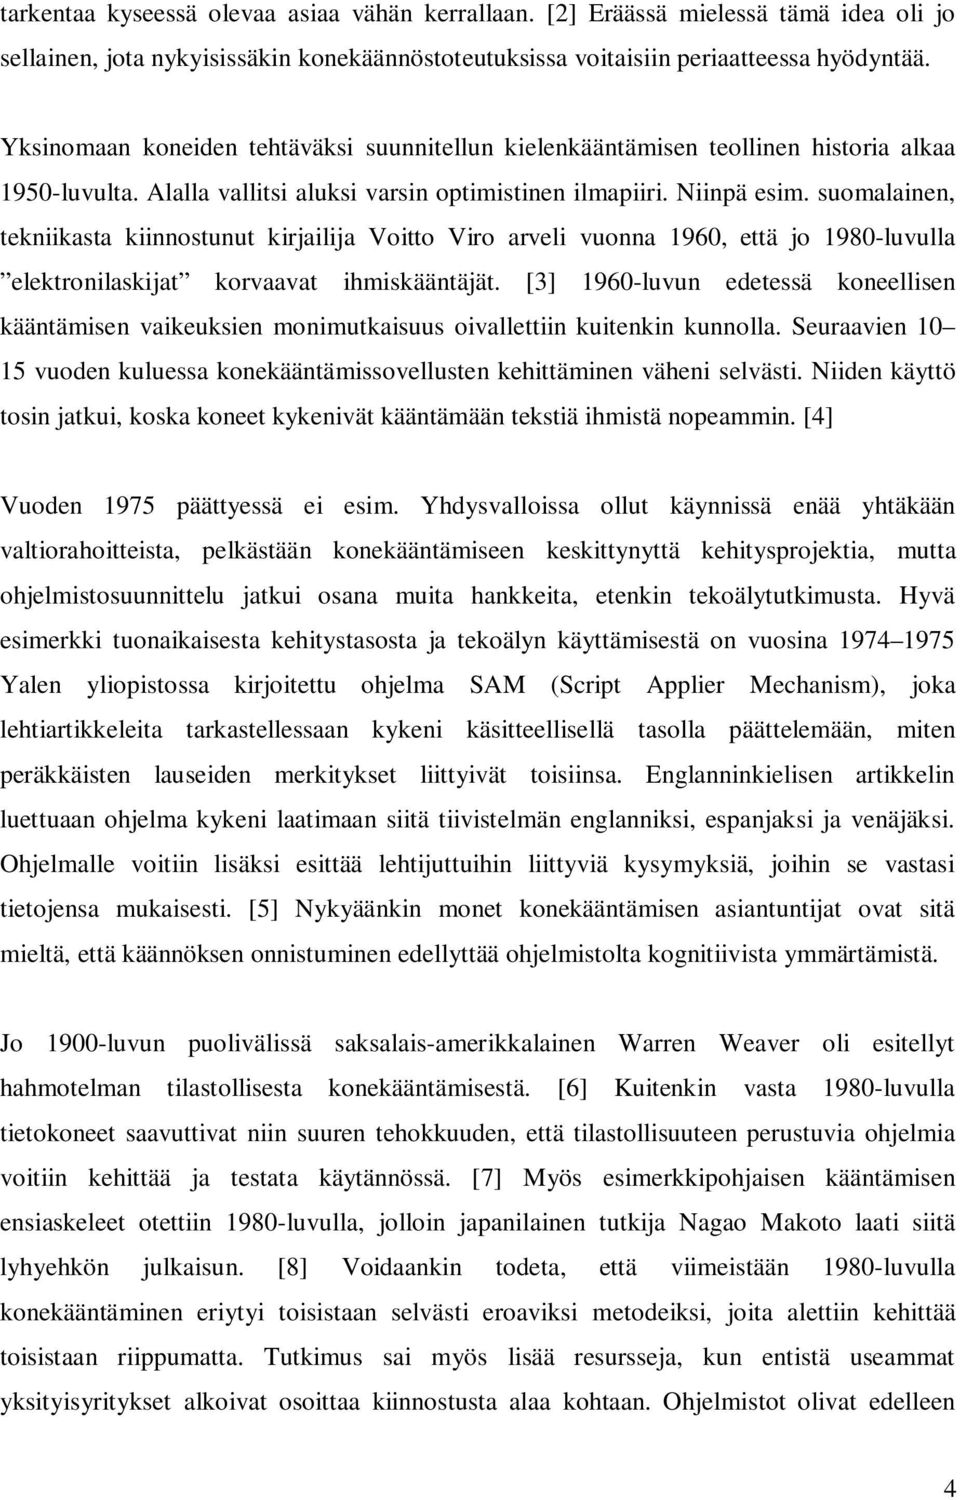 suomalainen, tekniikasta kiinnostunut kirjailija Voitto Viro arveli vuonna 1960, että jo 1980-luvulla elektronilaskijat korvaavat ihmiskääntäjät.